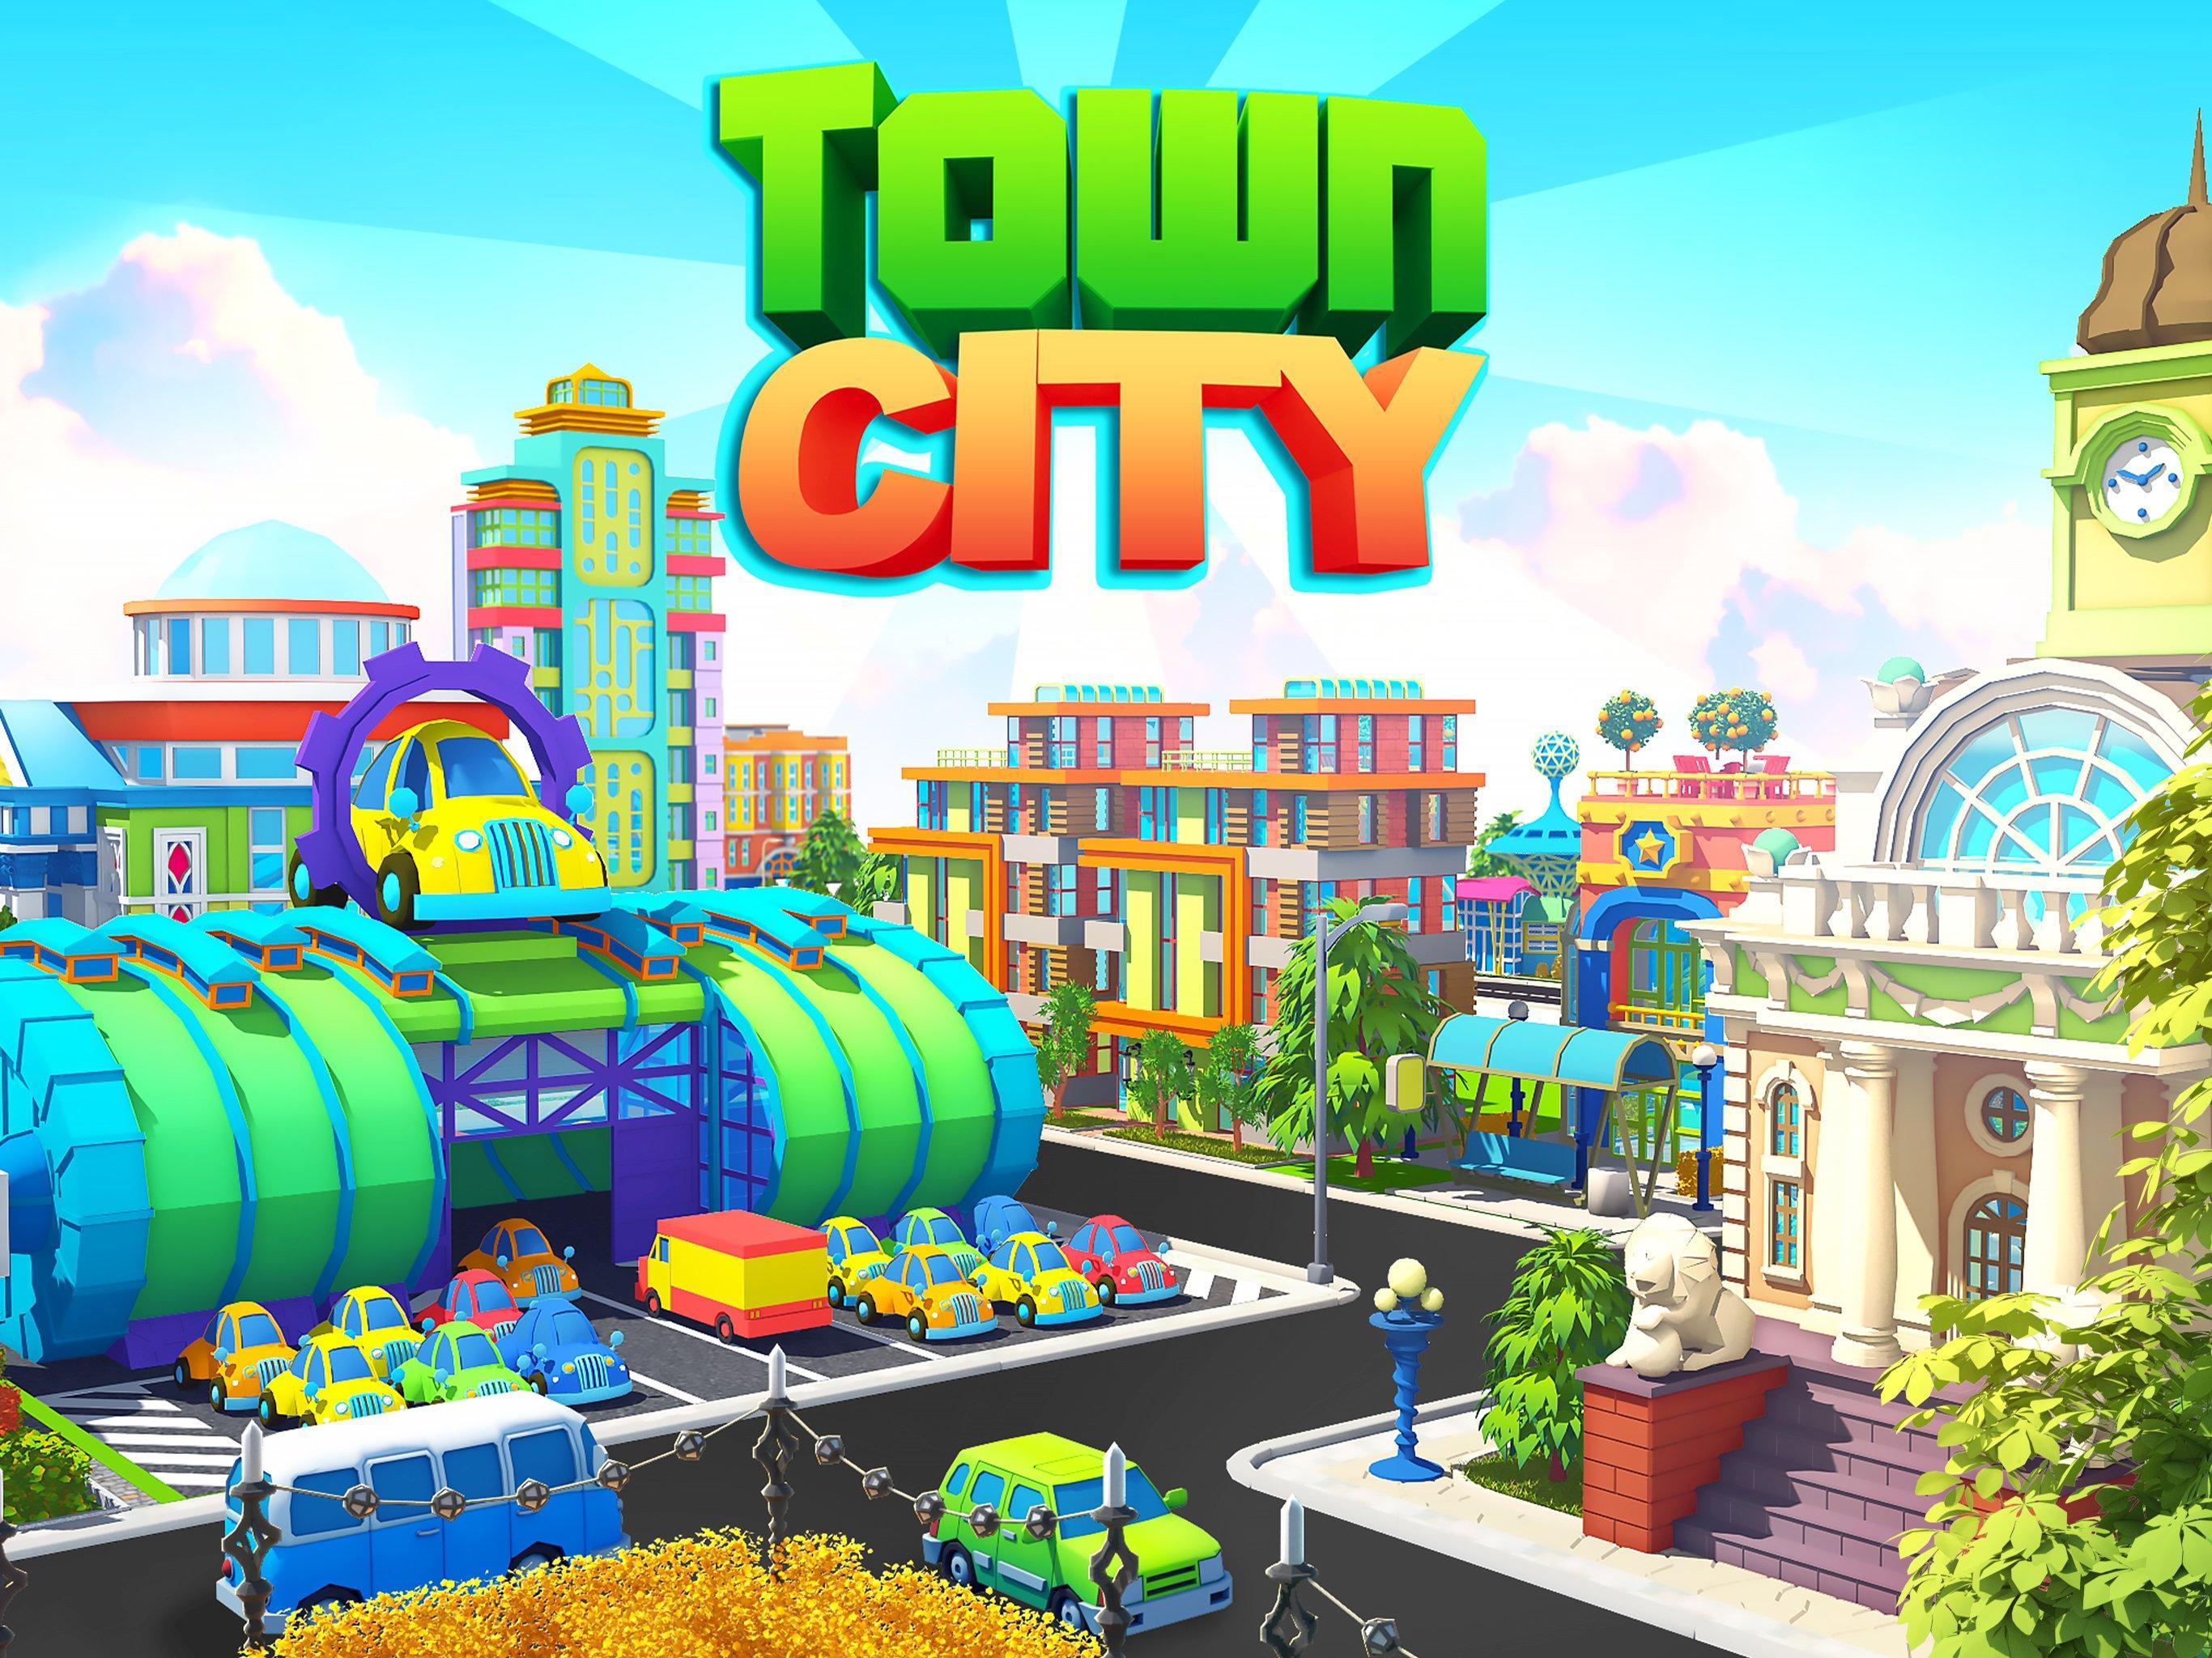 City build games. My City город. Игра в города. Игра строить город. Игра симулятор постройки города.